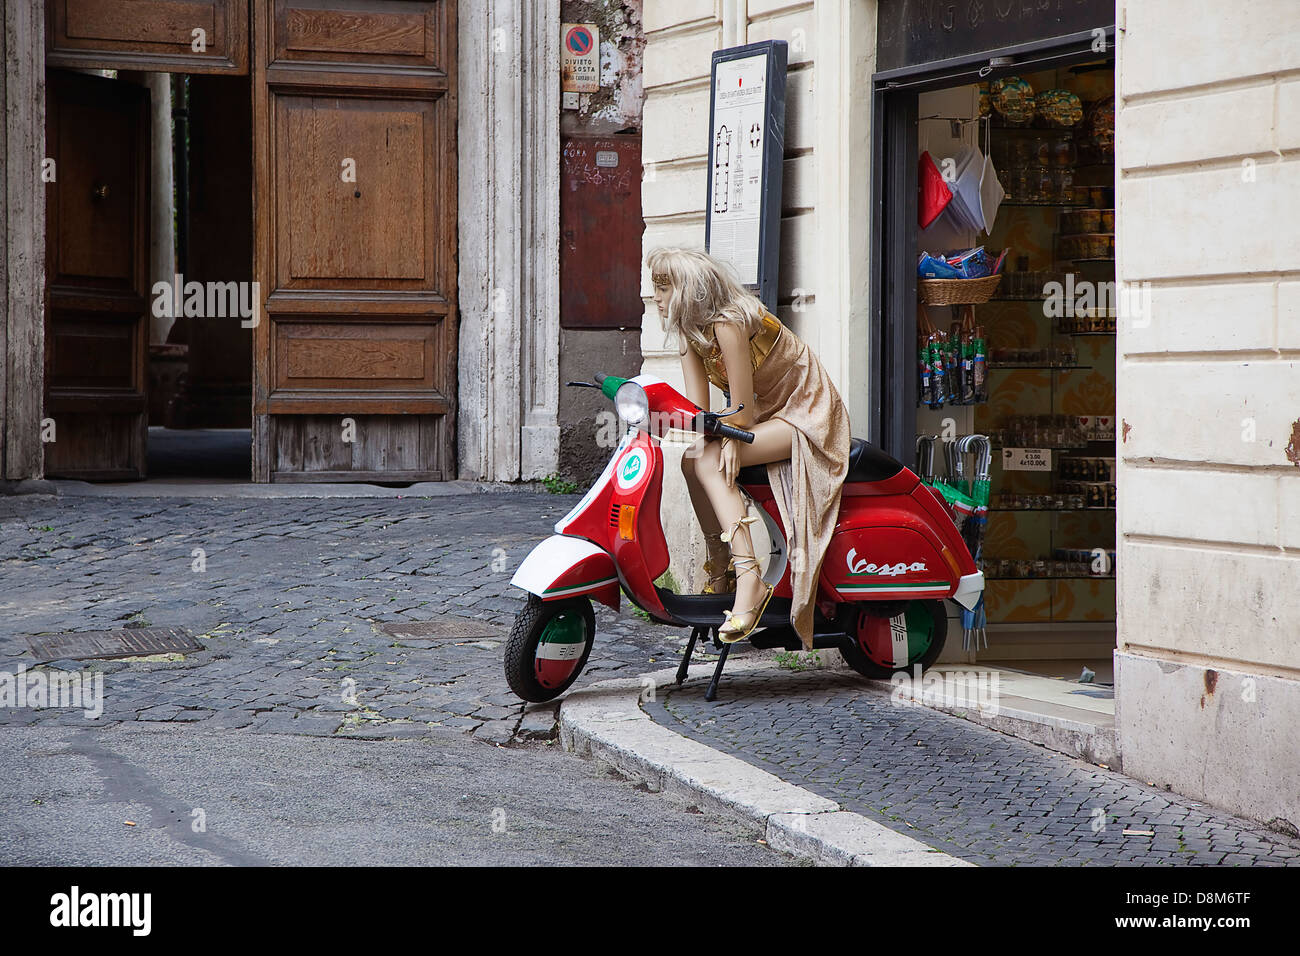 Italia Lazio Roma, Manichino seduto sulla Vespa al di fuori del negozio di souvenir. Foto Stock